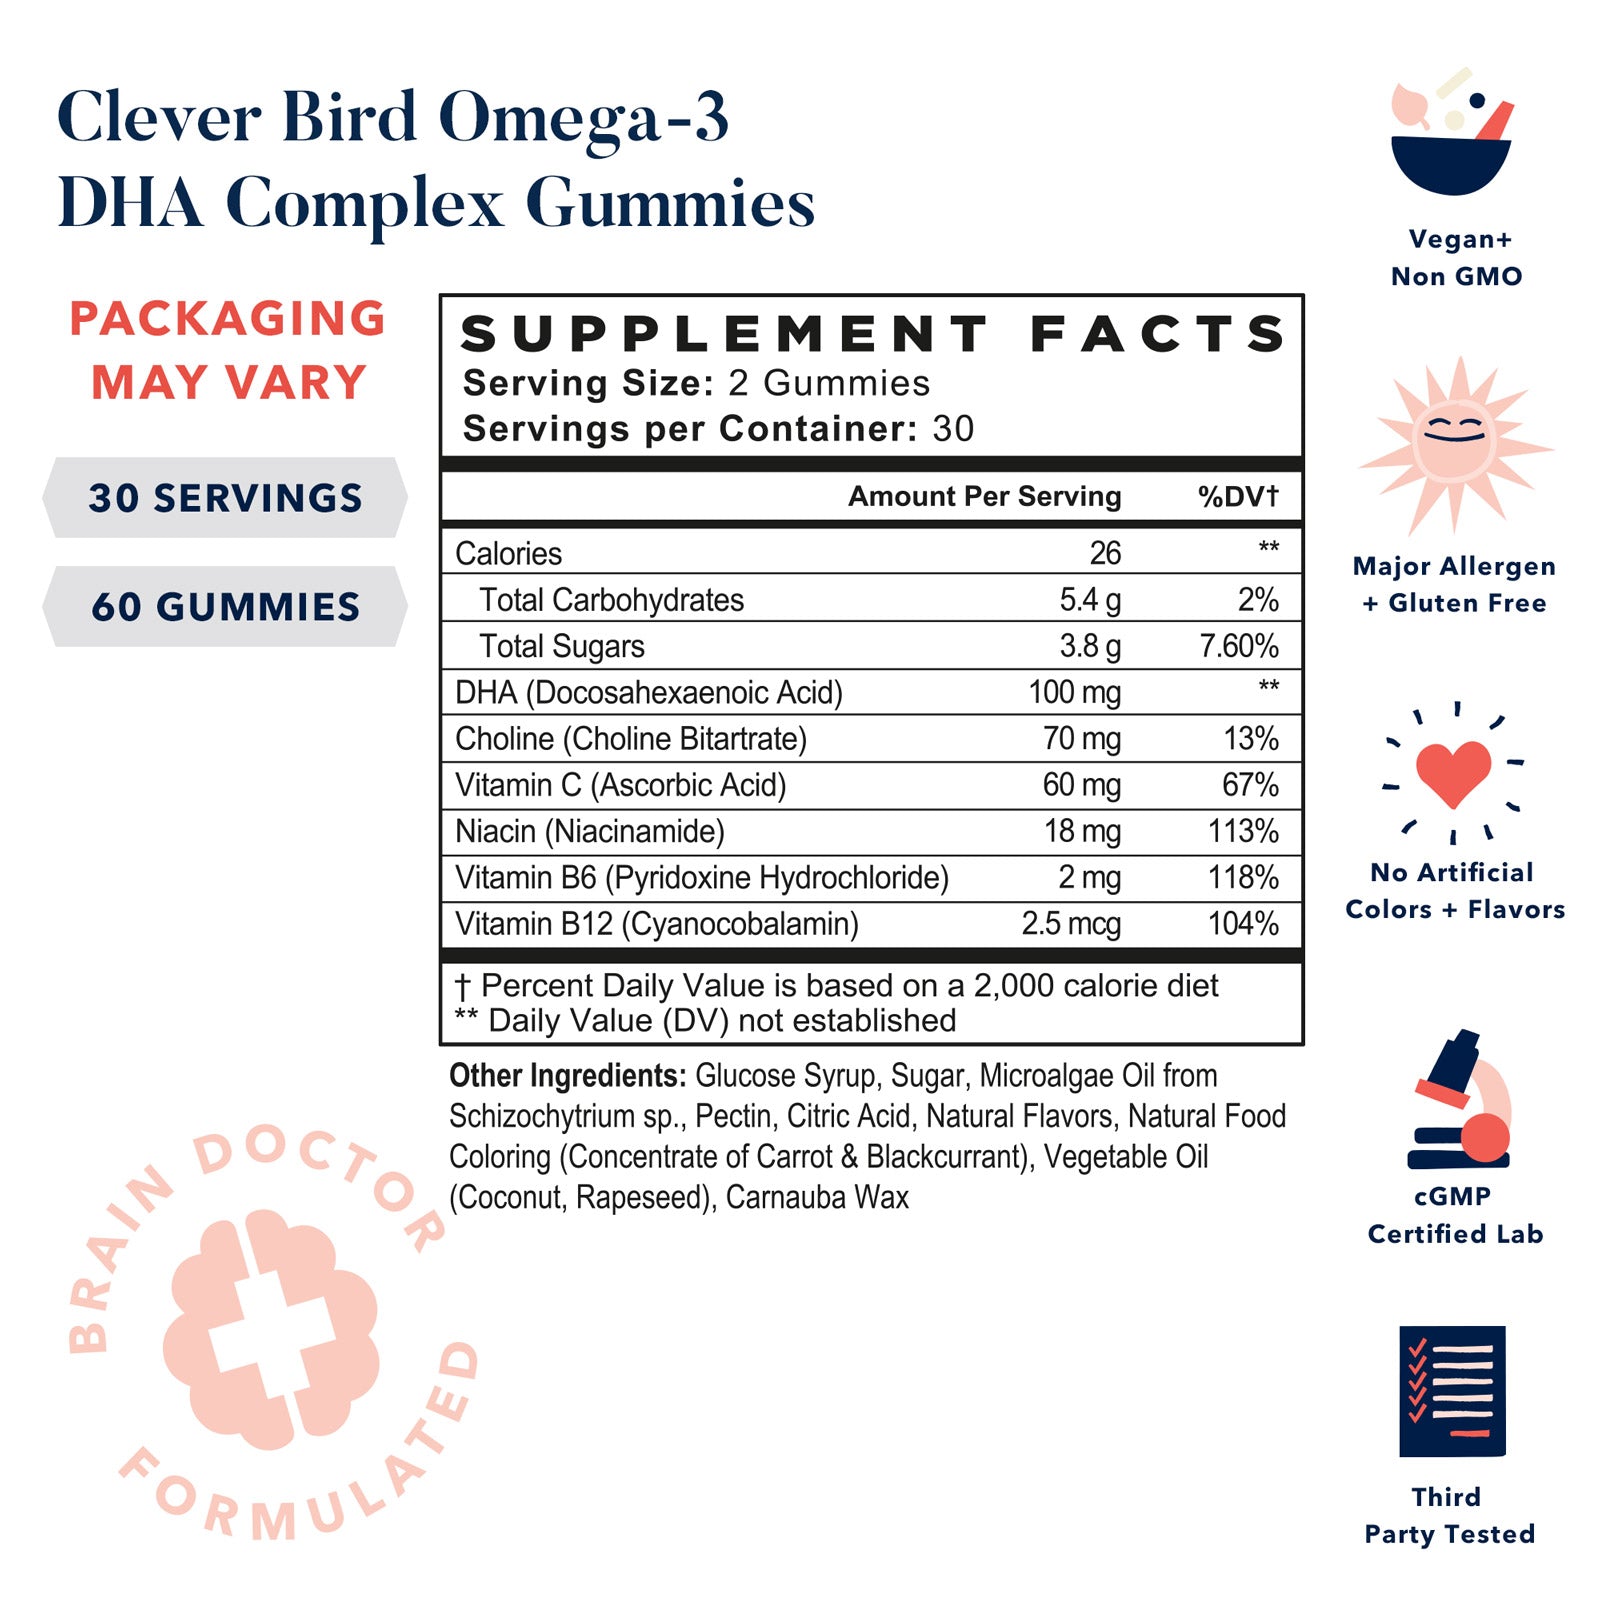 Omega-3 DHA Gummies